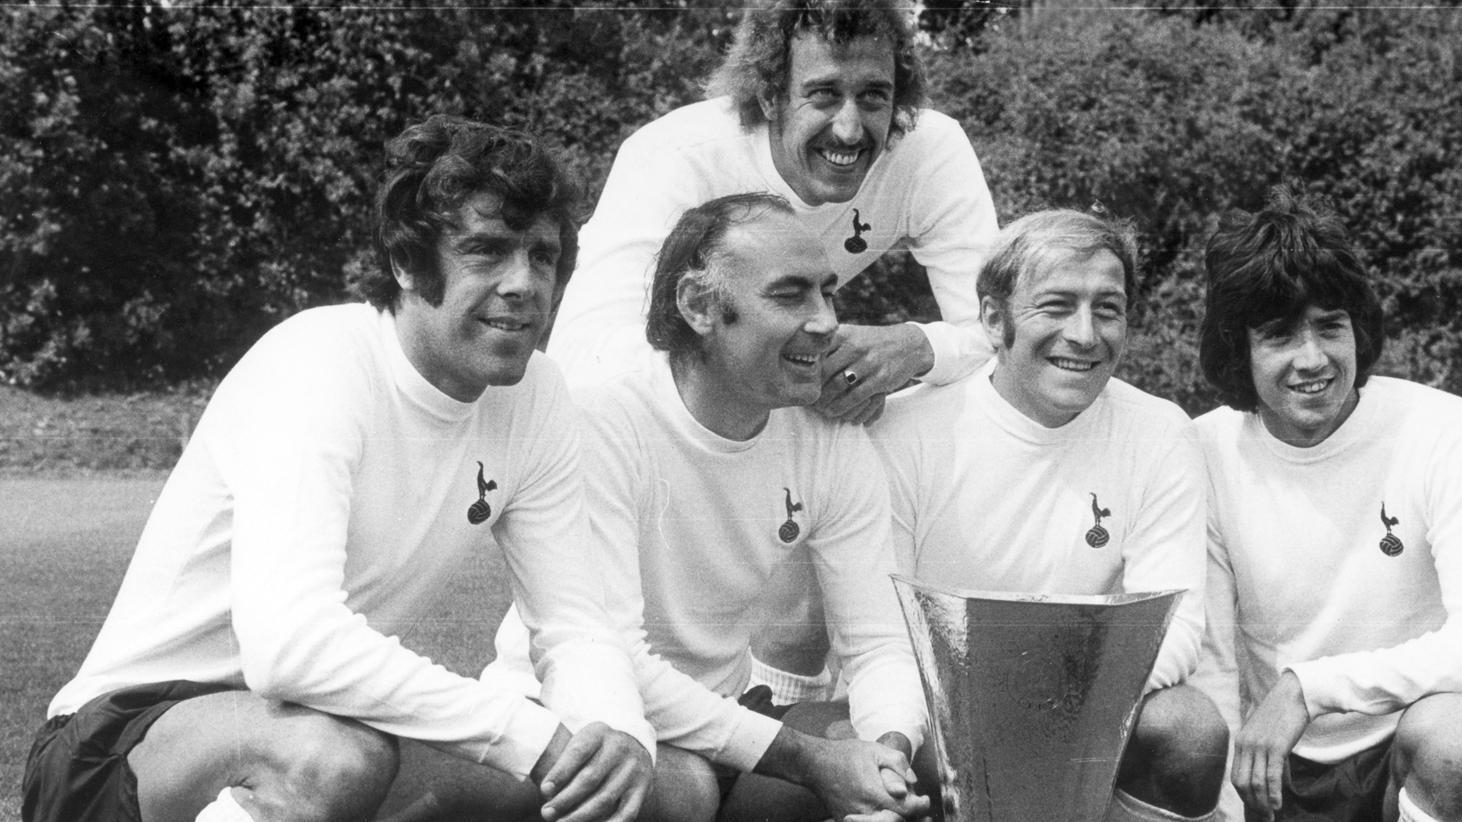 Equipe do Tottenham com a taça de campeão em 1971